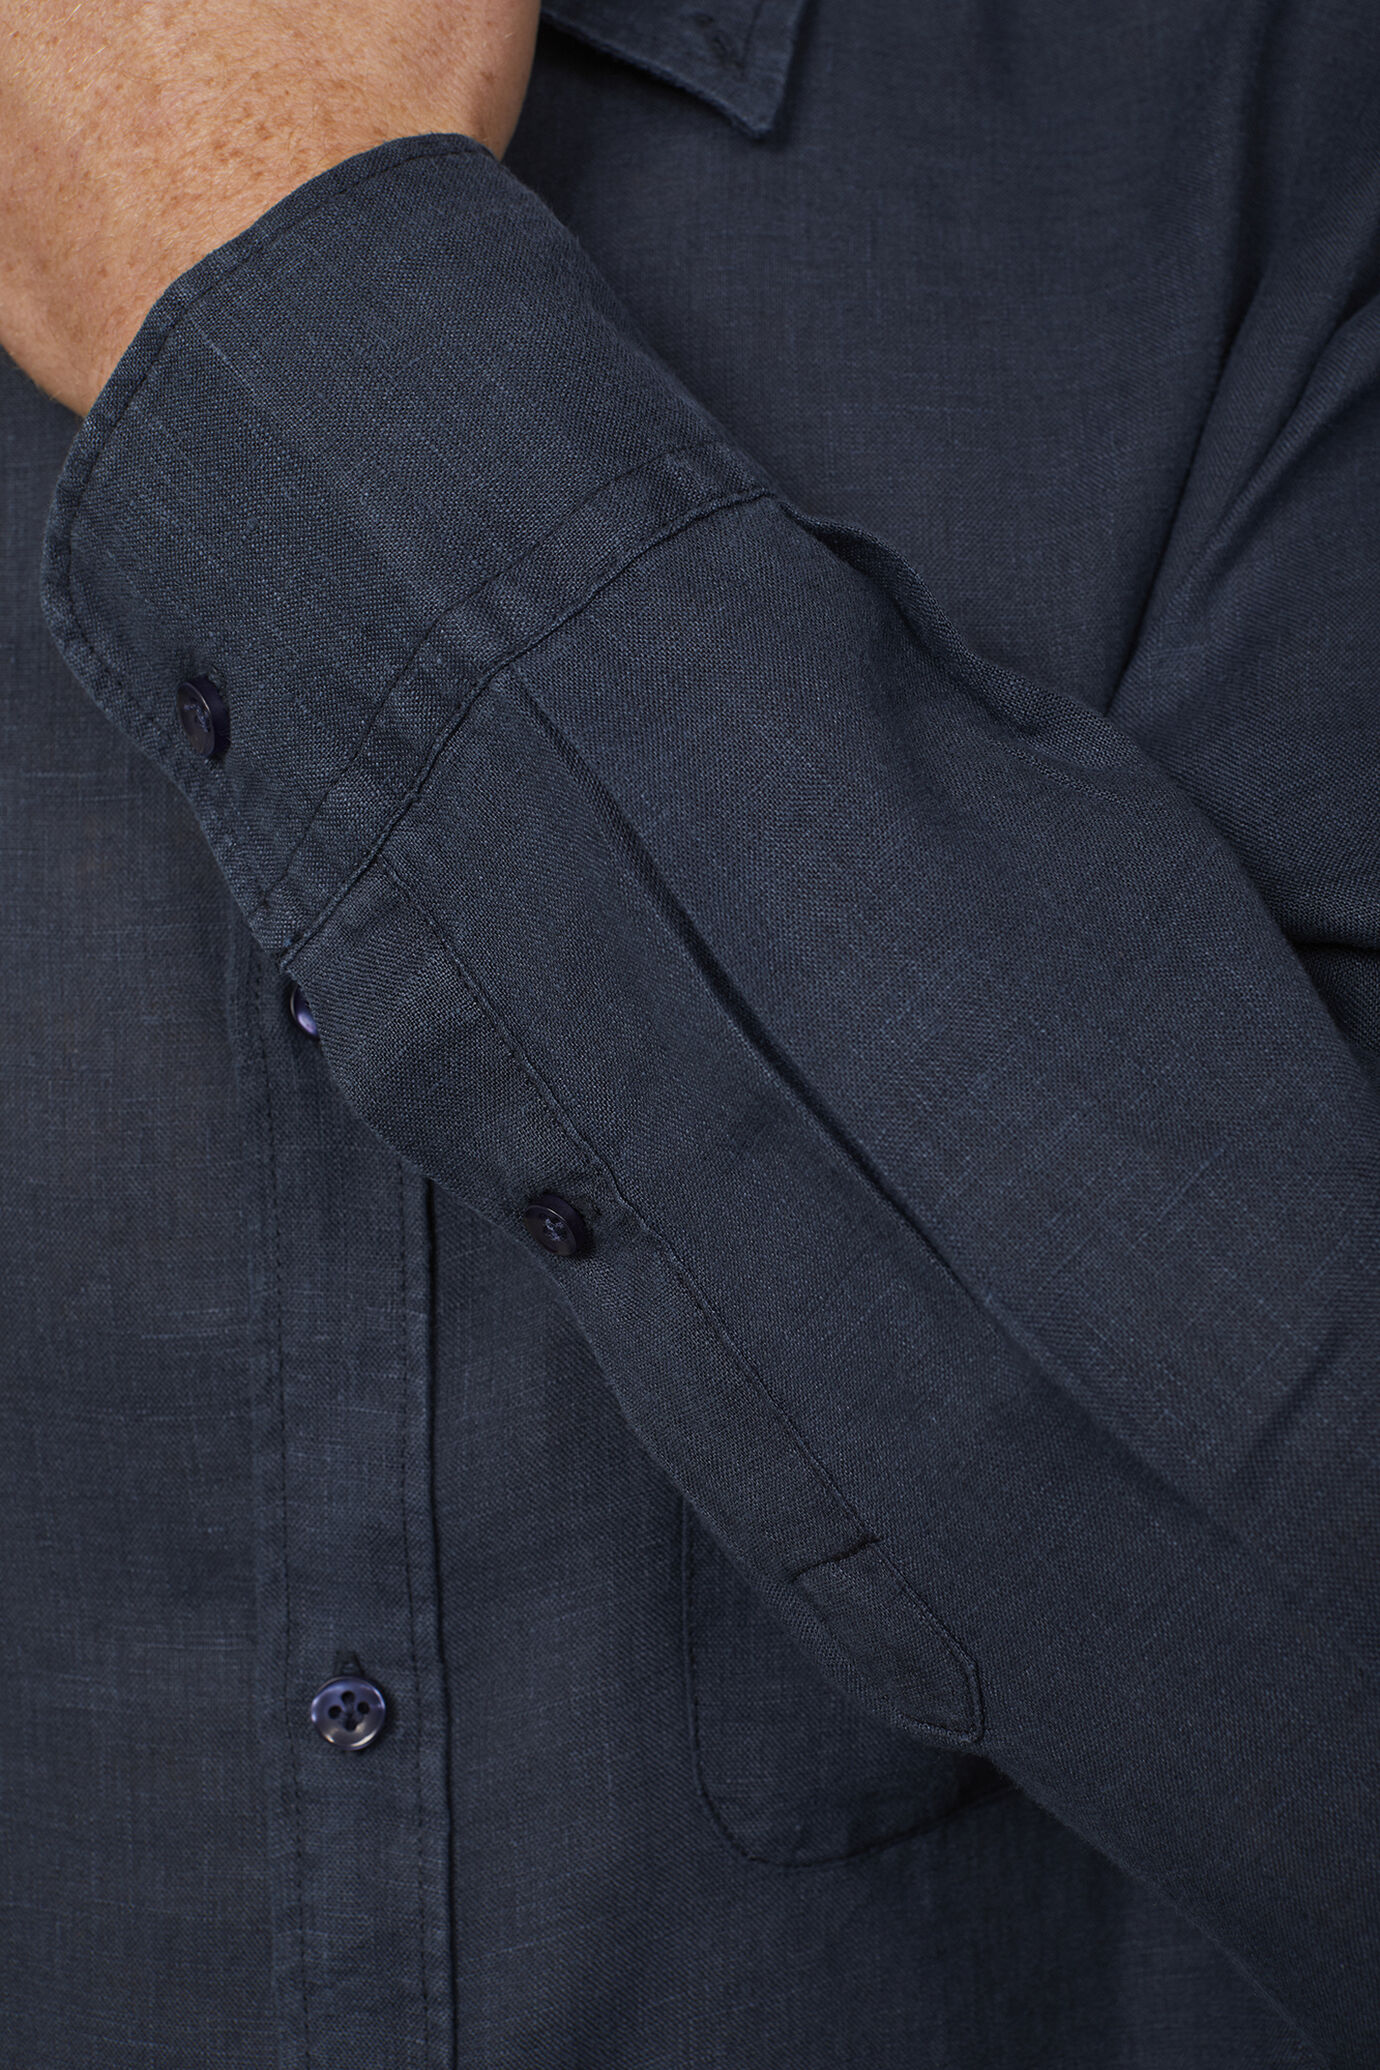 Camicia casual uomo collo button down 100% lino comfort fit image number 4